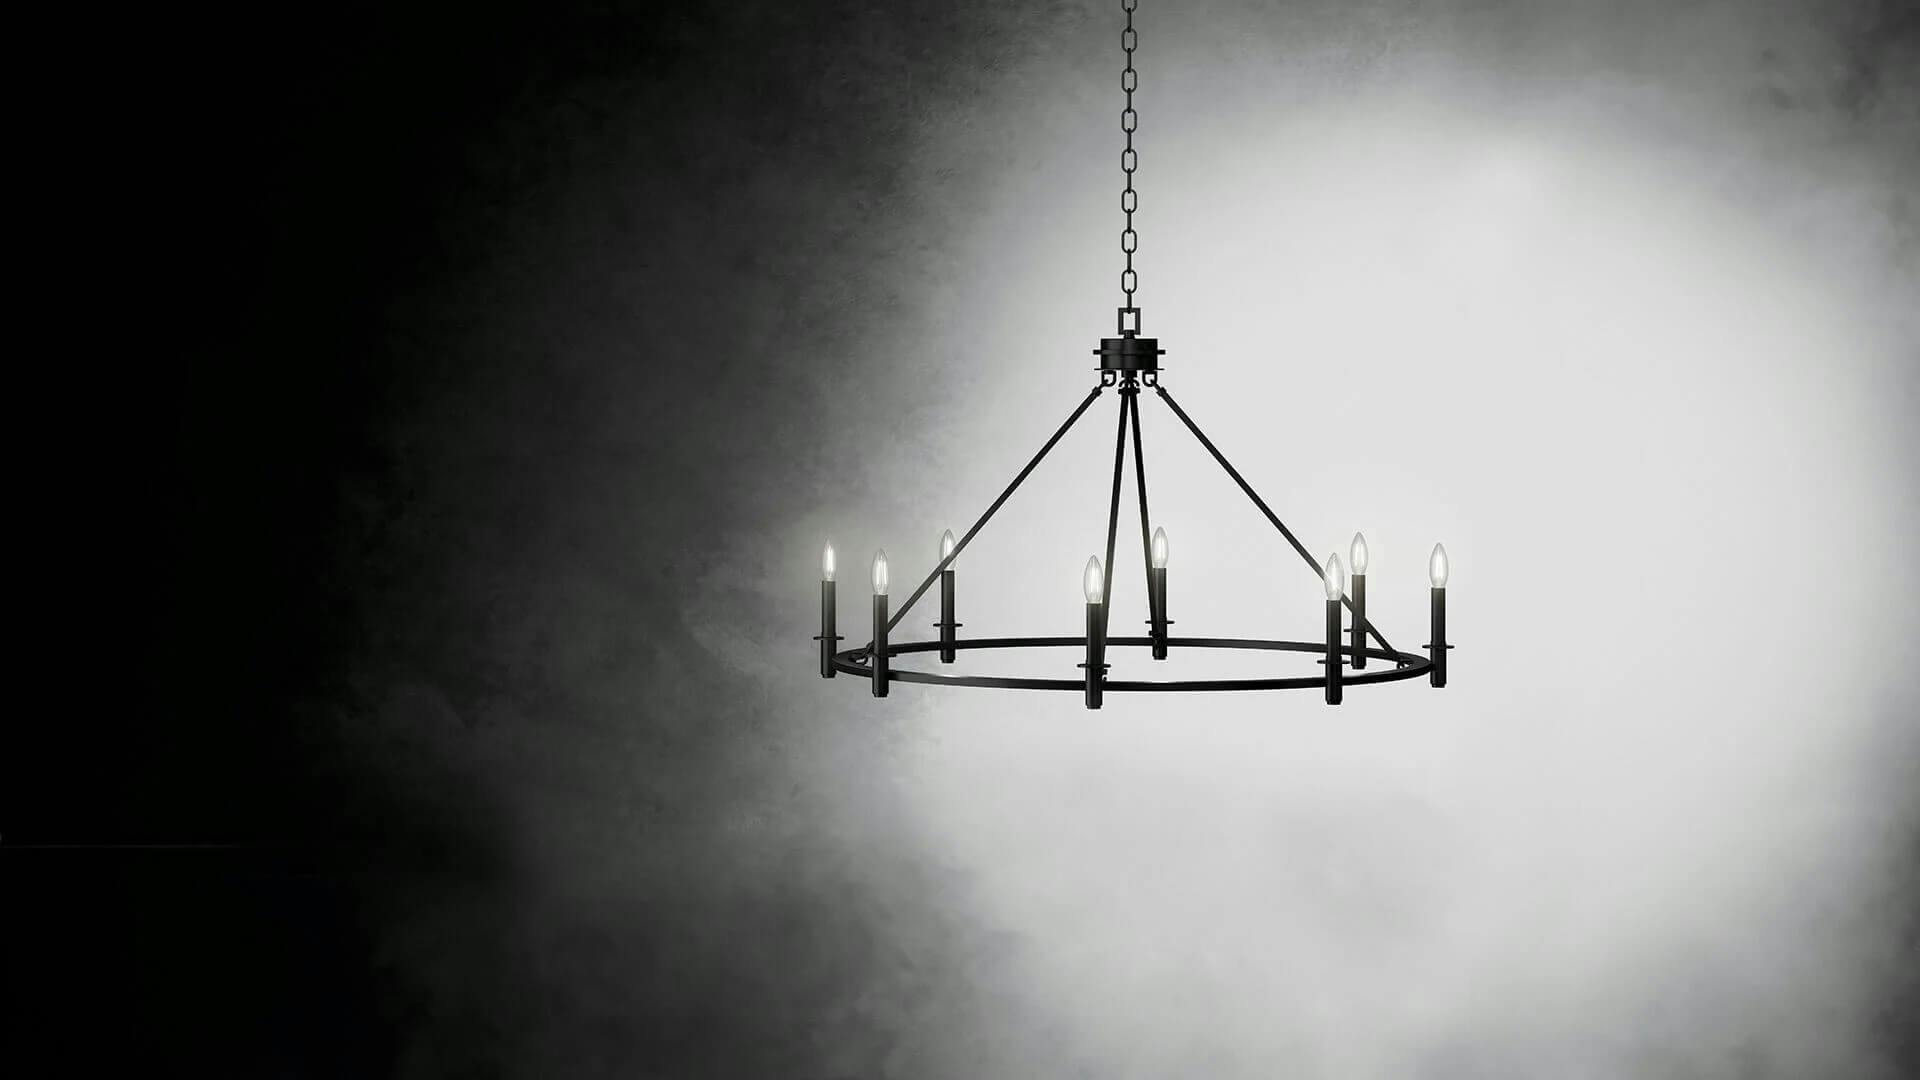 Carrick chandelier on dark background.